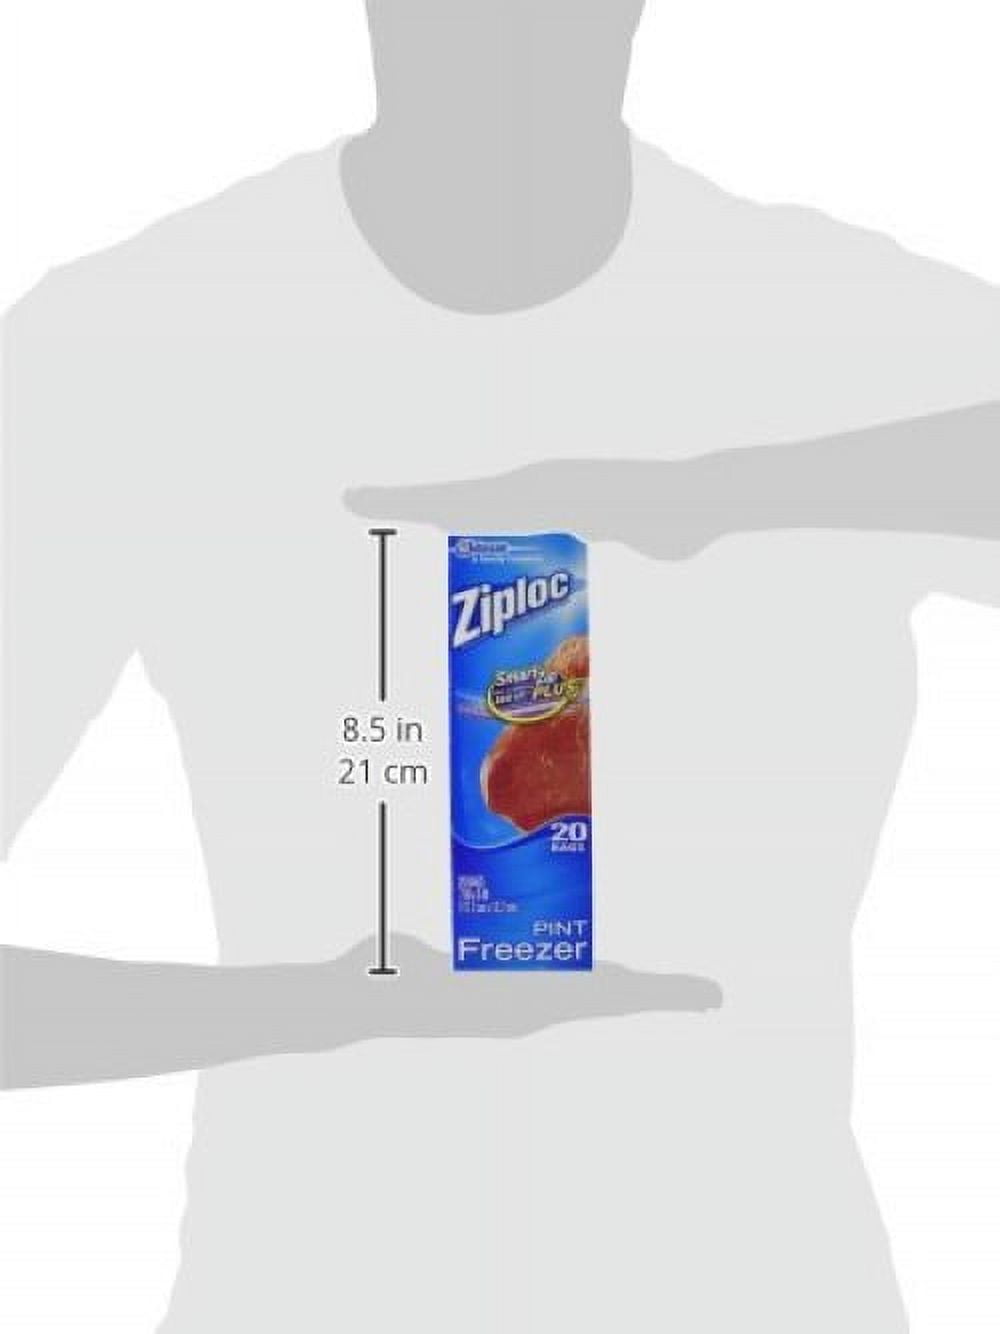 Ziplock Pint Heavy Duty Freezer Bags - 20 Pack